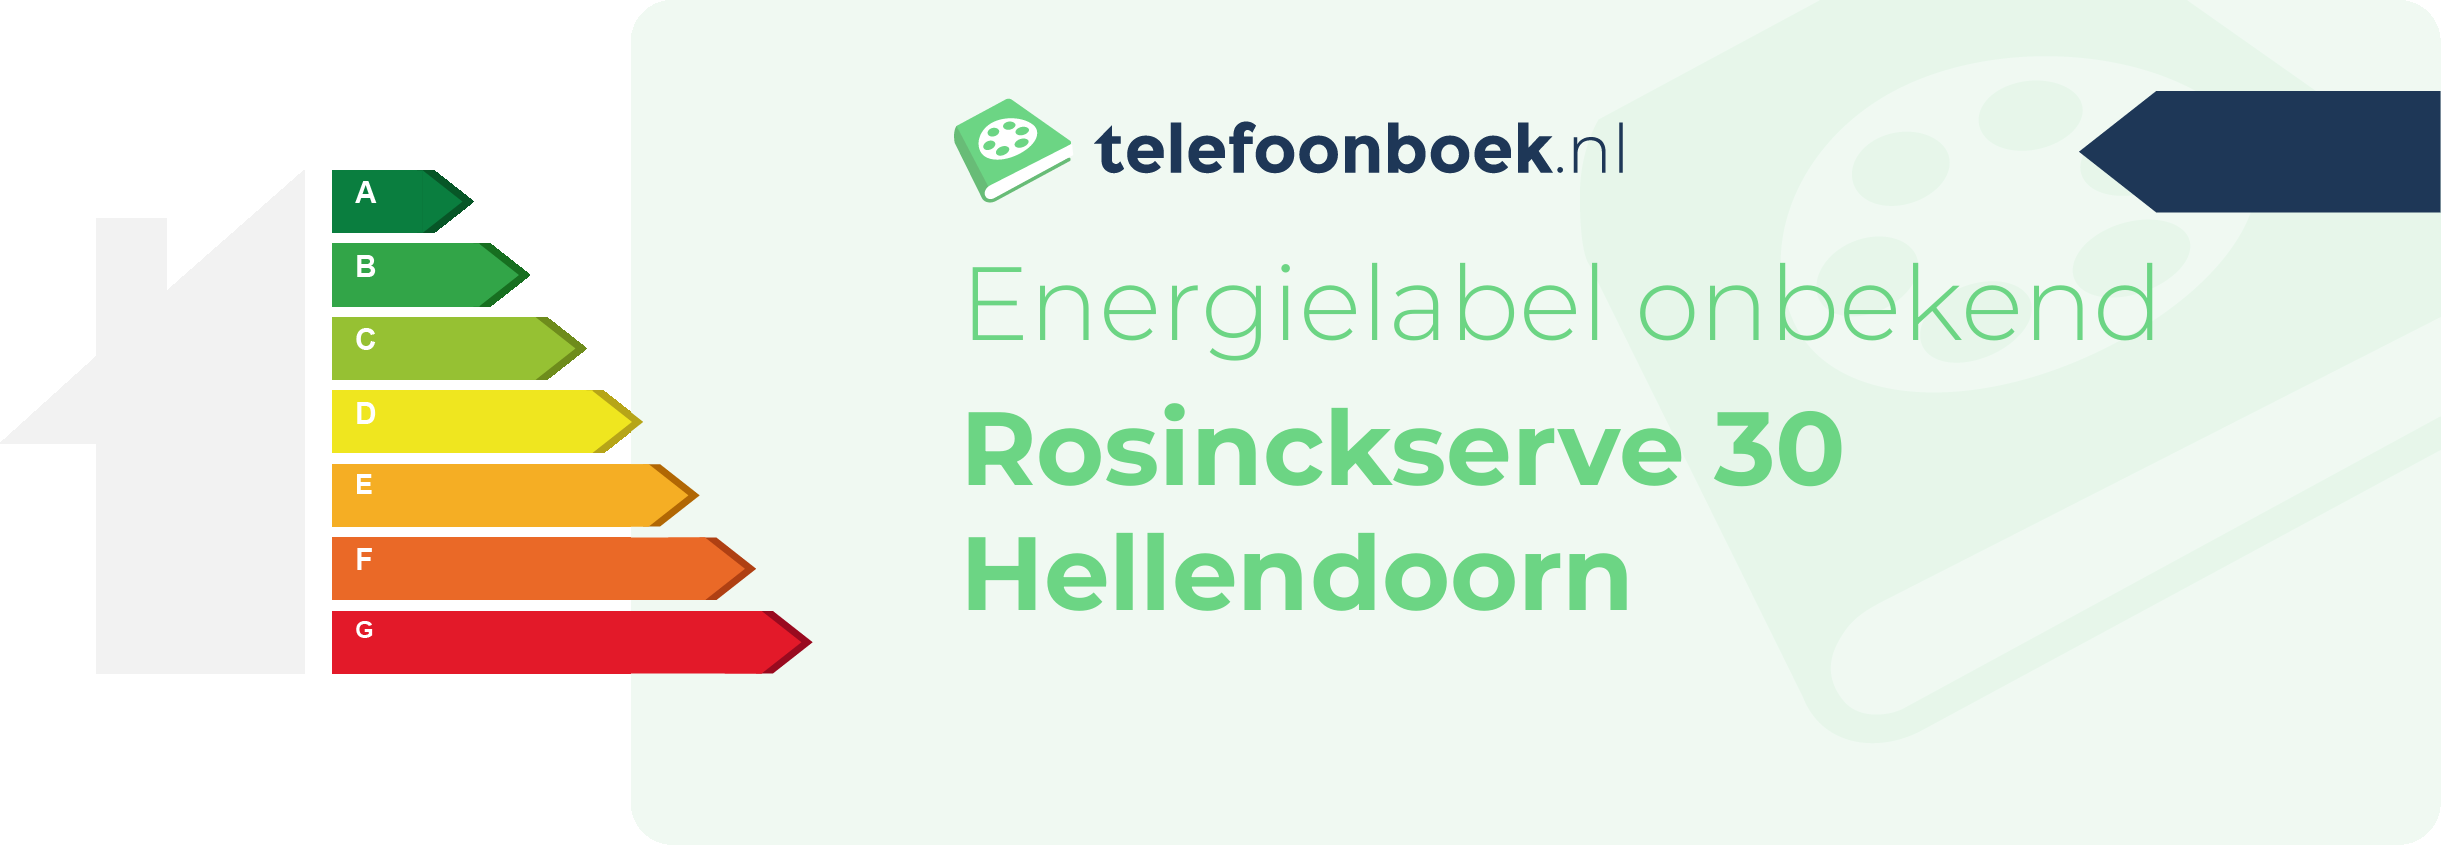 Energielabel Rosinckserve 30 Hellendoorn